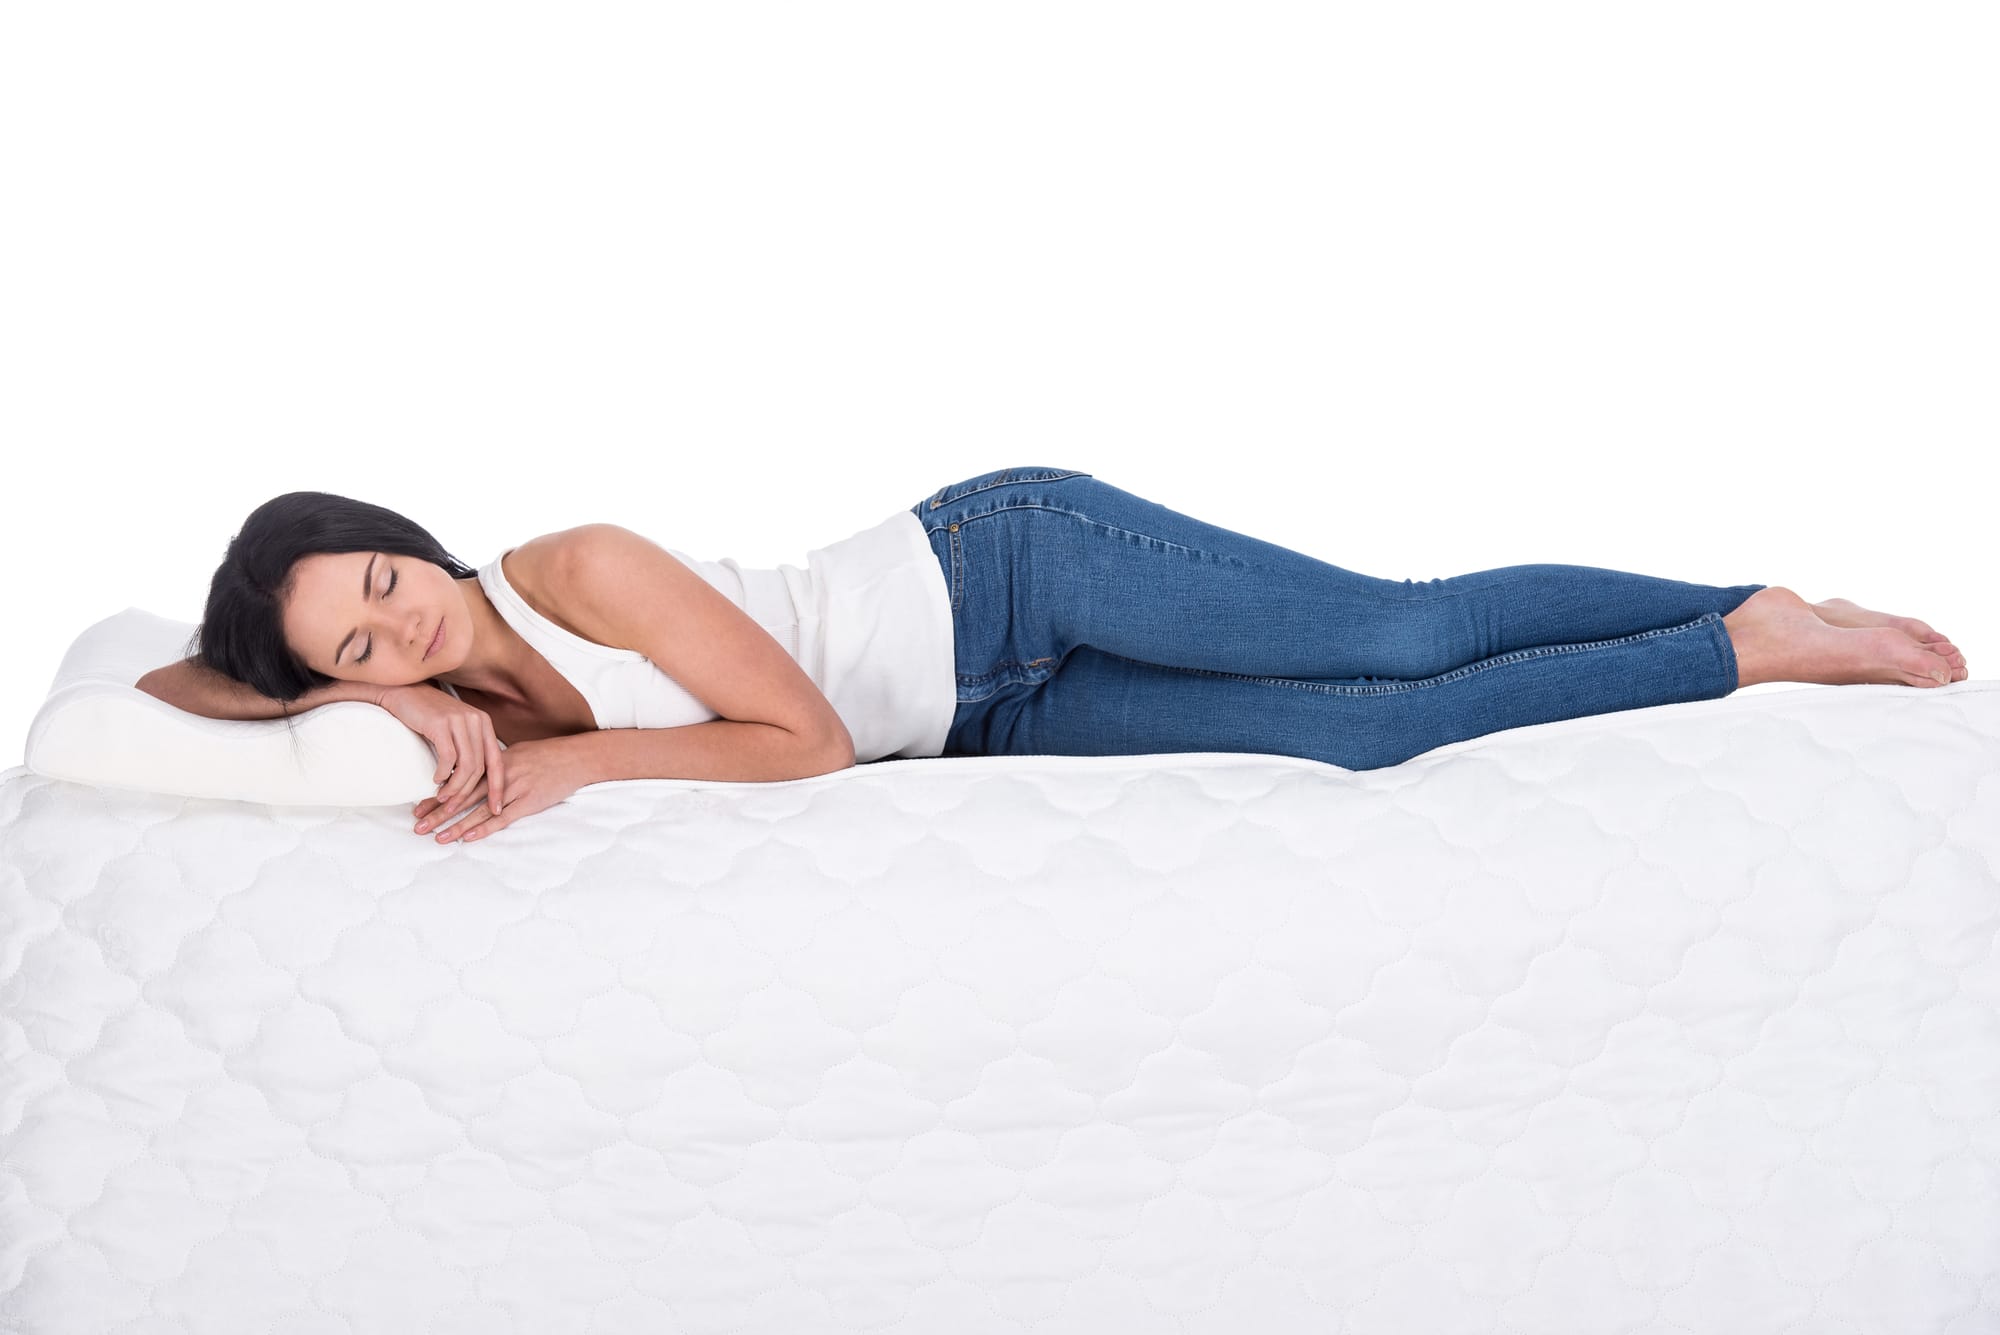 a woman sleeping on a mattress